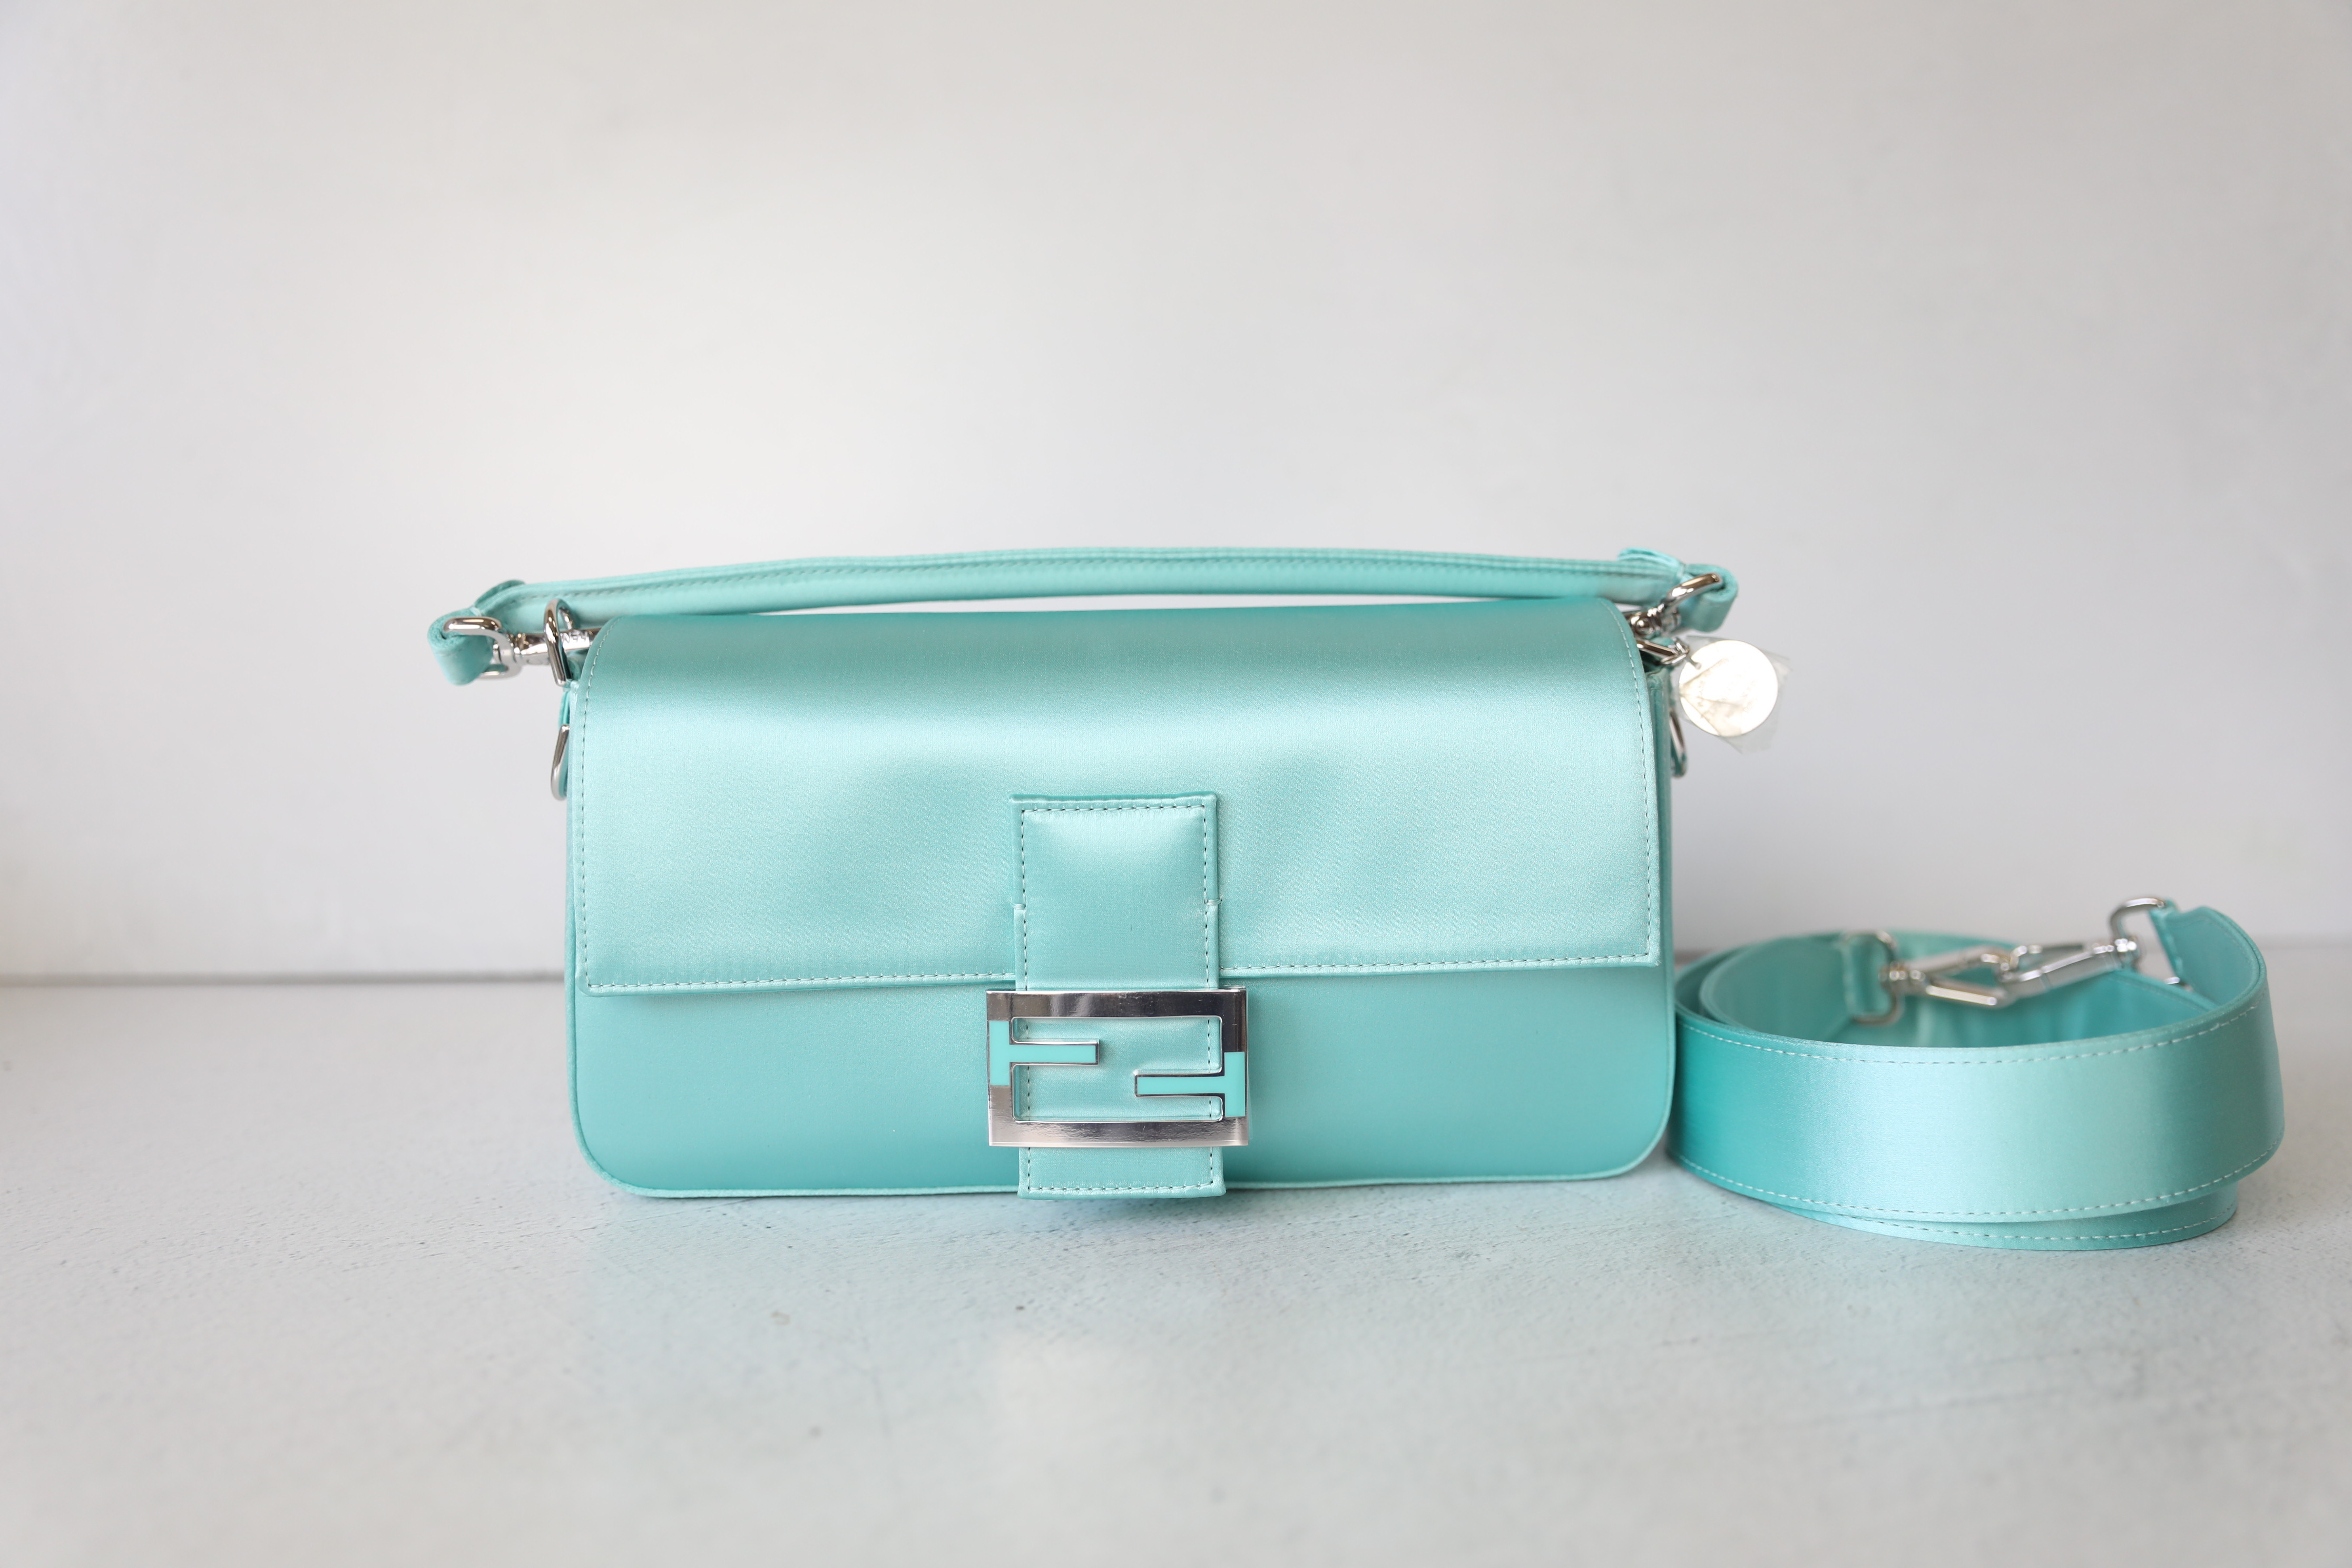 tiffany blue 🤍 #bags #purses #purseblog #fendibaguette #ysl #juliafox